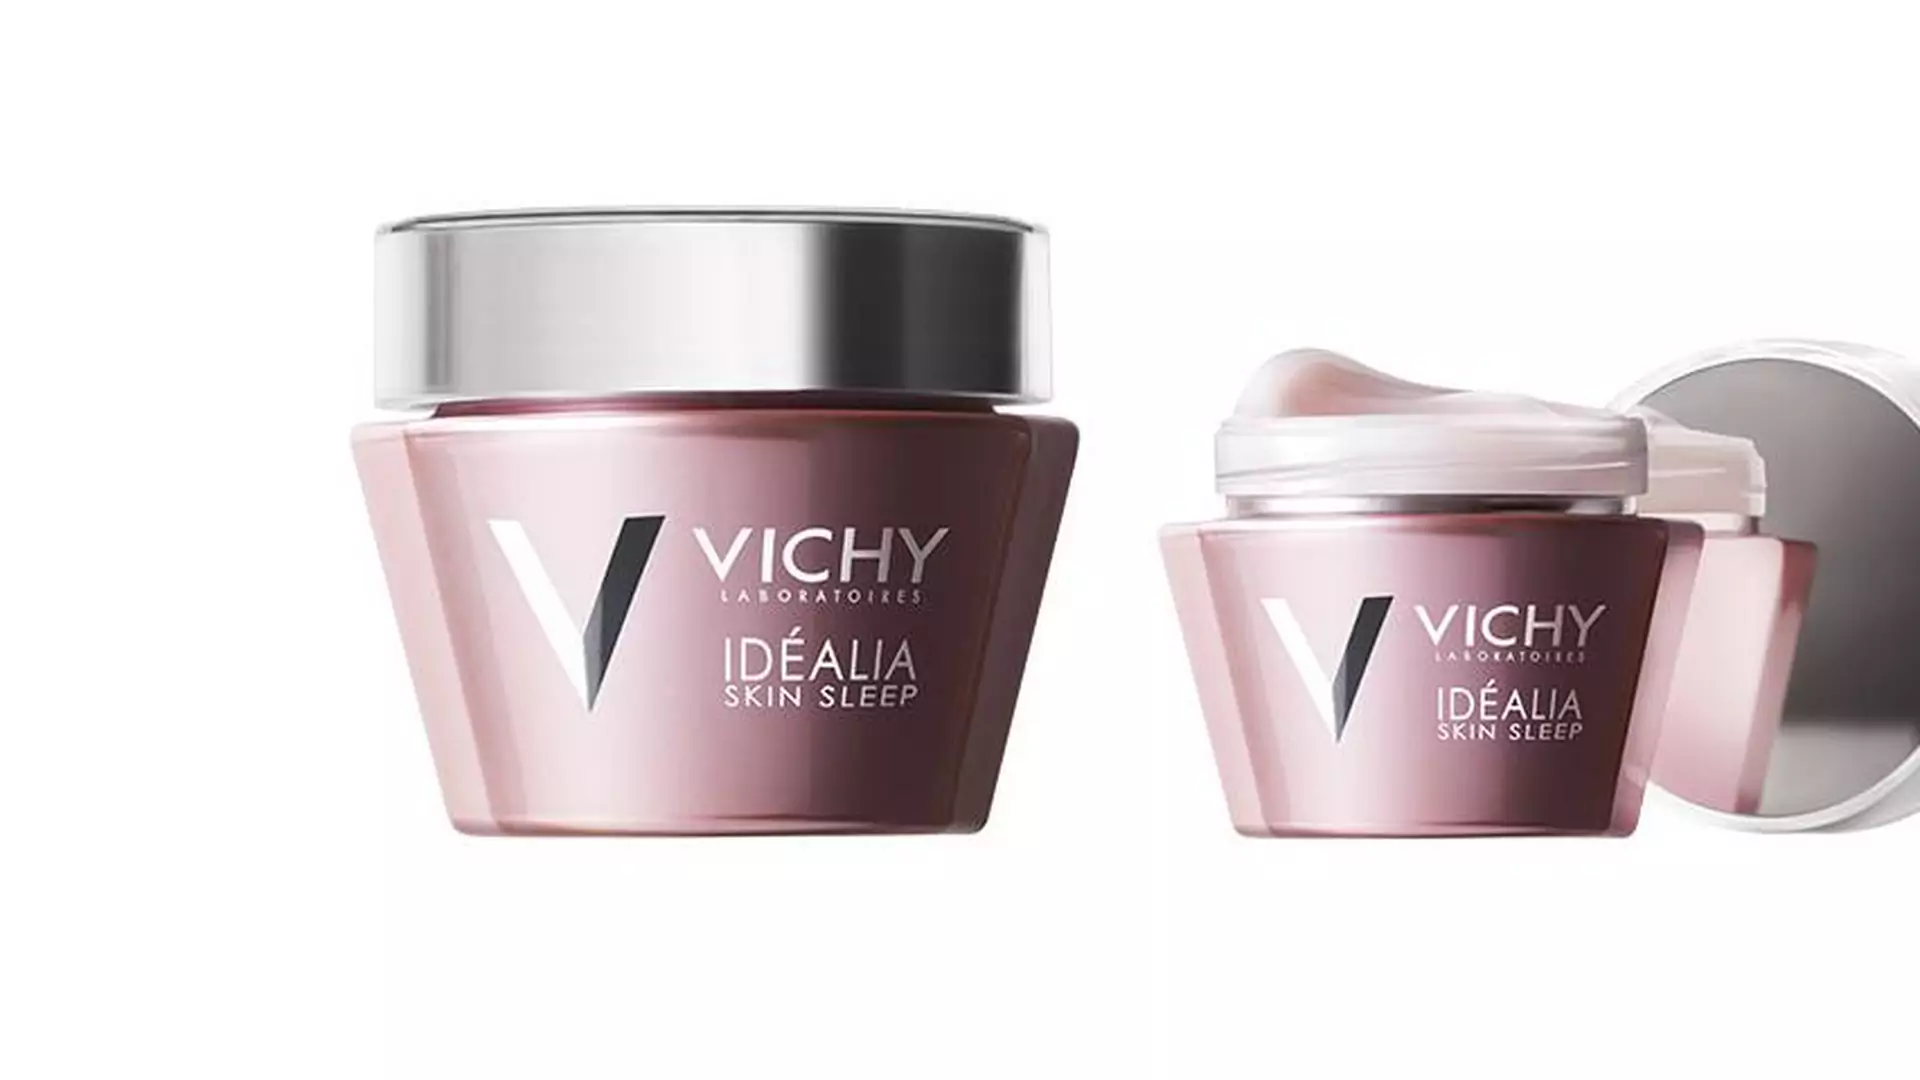 Najlepsze recenzje Vichy Idealia Skin Sleep na blogach!